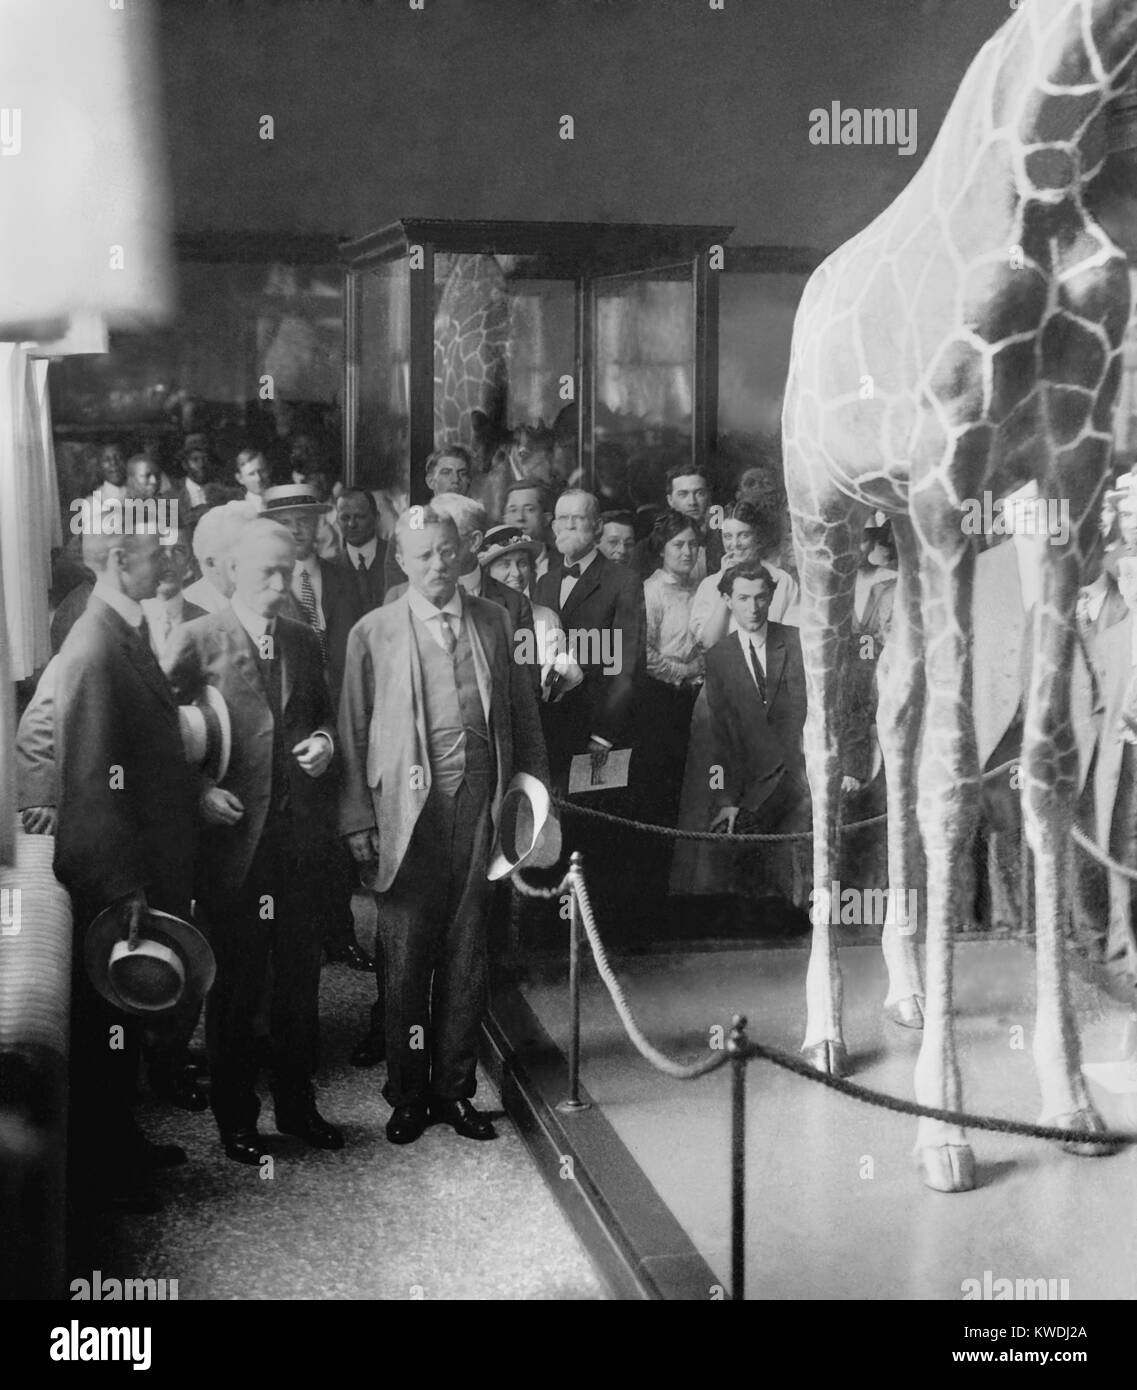 El Coronel Theodore Roosevelt, en una ceremonia celebrada en El Museo Nacional, c. 1914-1917. Ahora se llama el Museo Smithsonian de Historia Natural posee Roosevelts East flora y fauna africana especímenes recolectados durante el Smithsonian-Roosevelt expedición africana de 1909-10 (BSLOC 2017 8 69) Foto de stock